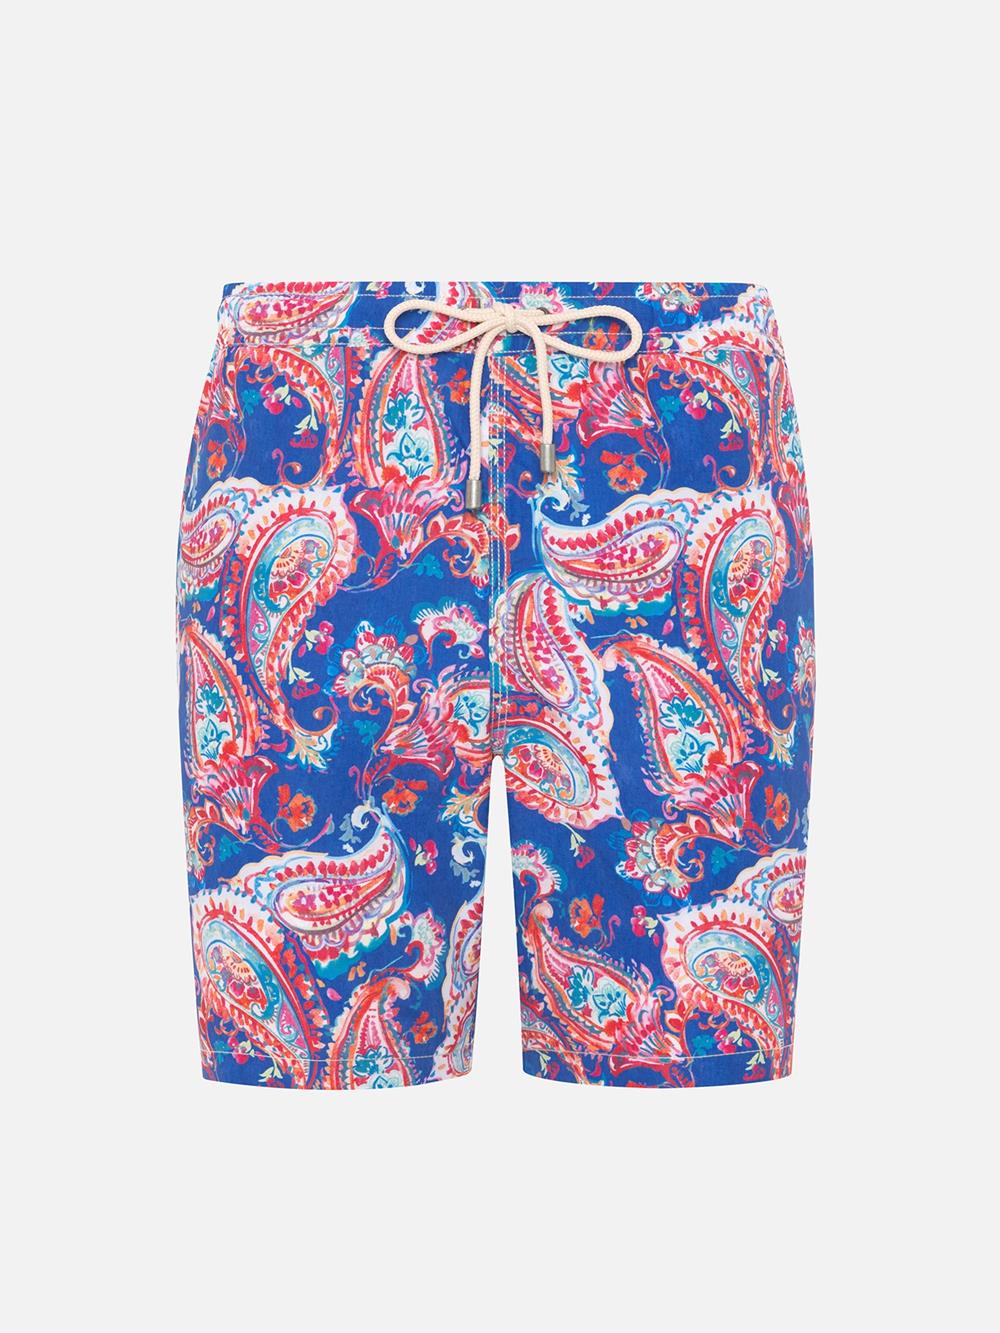 Indies paisley print swimwear